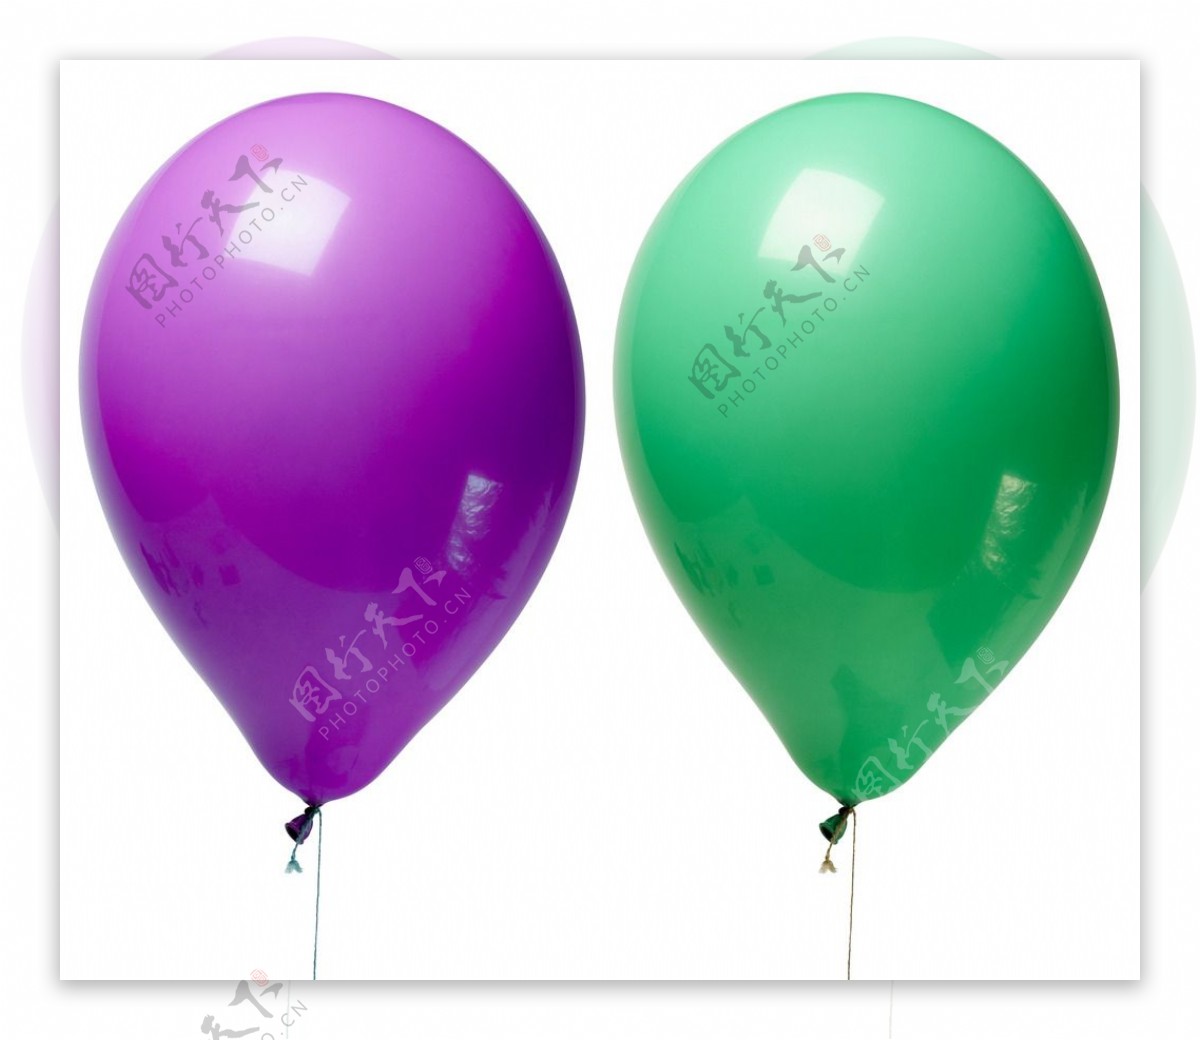 生日快乐蓝色气球图片大全-生日快乐蓝色气球高清图片下载-觅知网